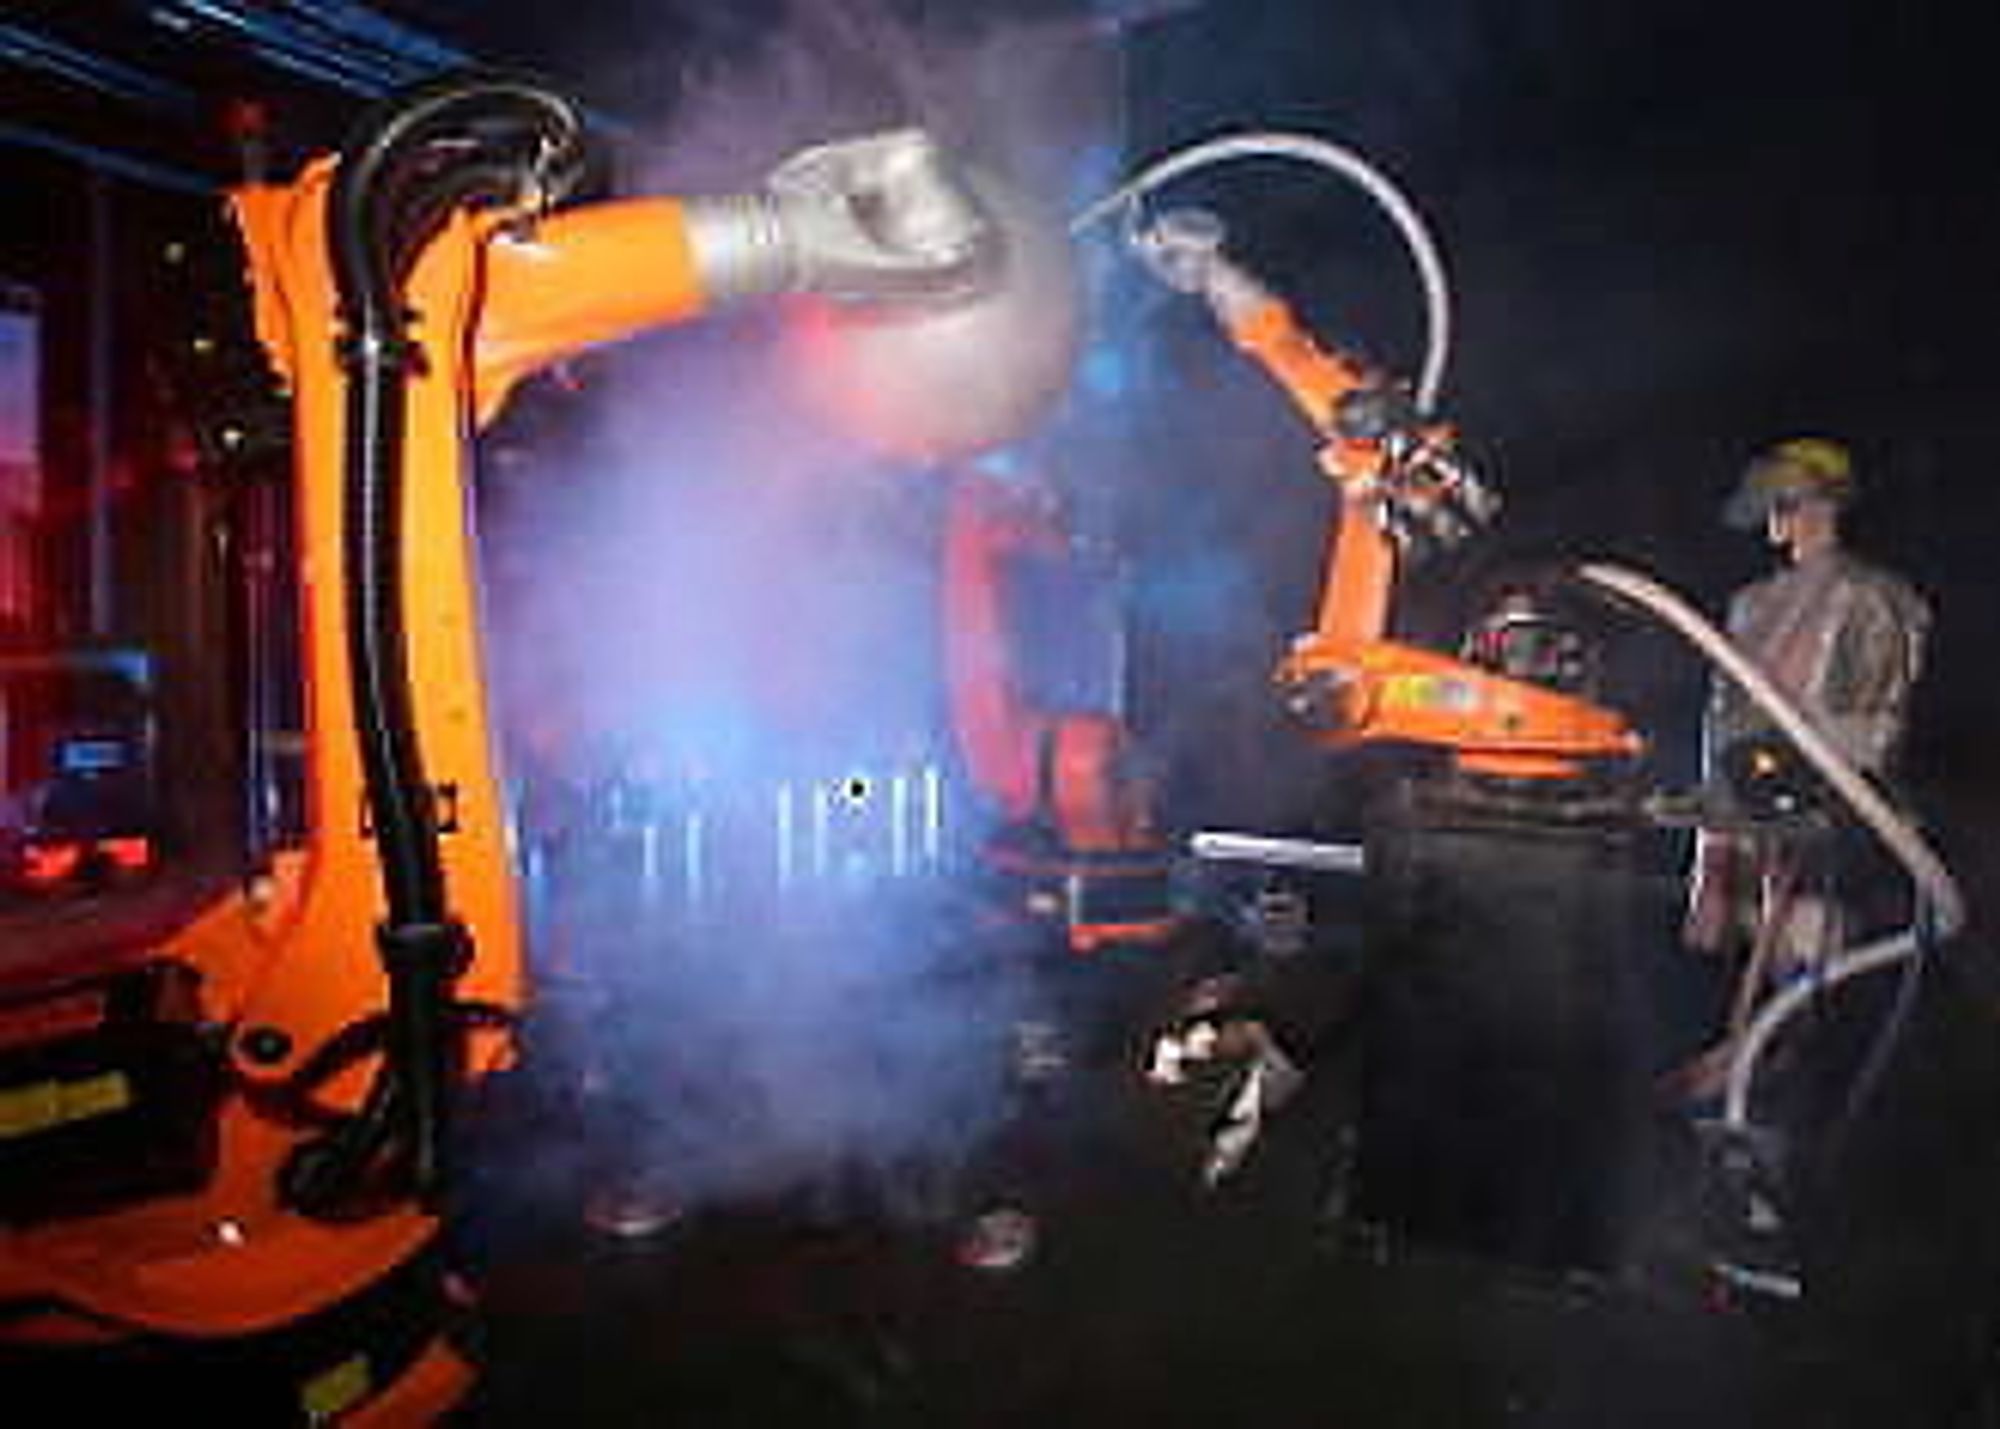 Eksempel på samarbeidende roboter: To holder arbeids-
stykket, og en tredje sveiser.